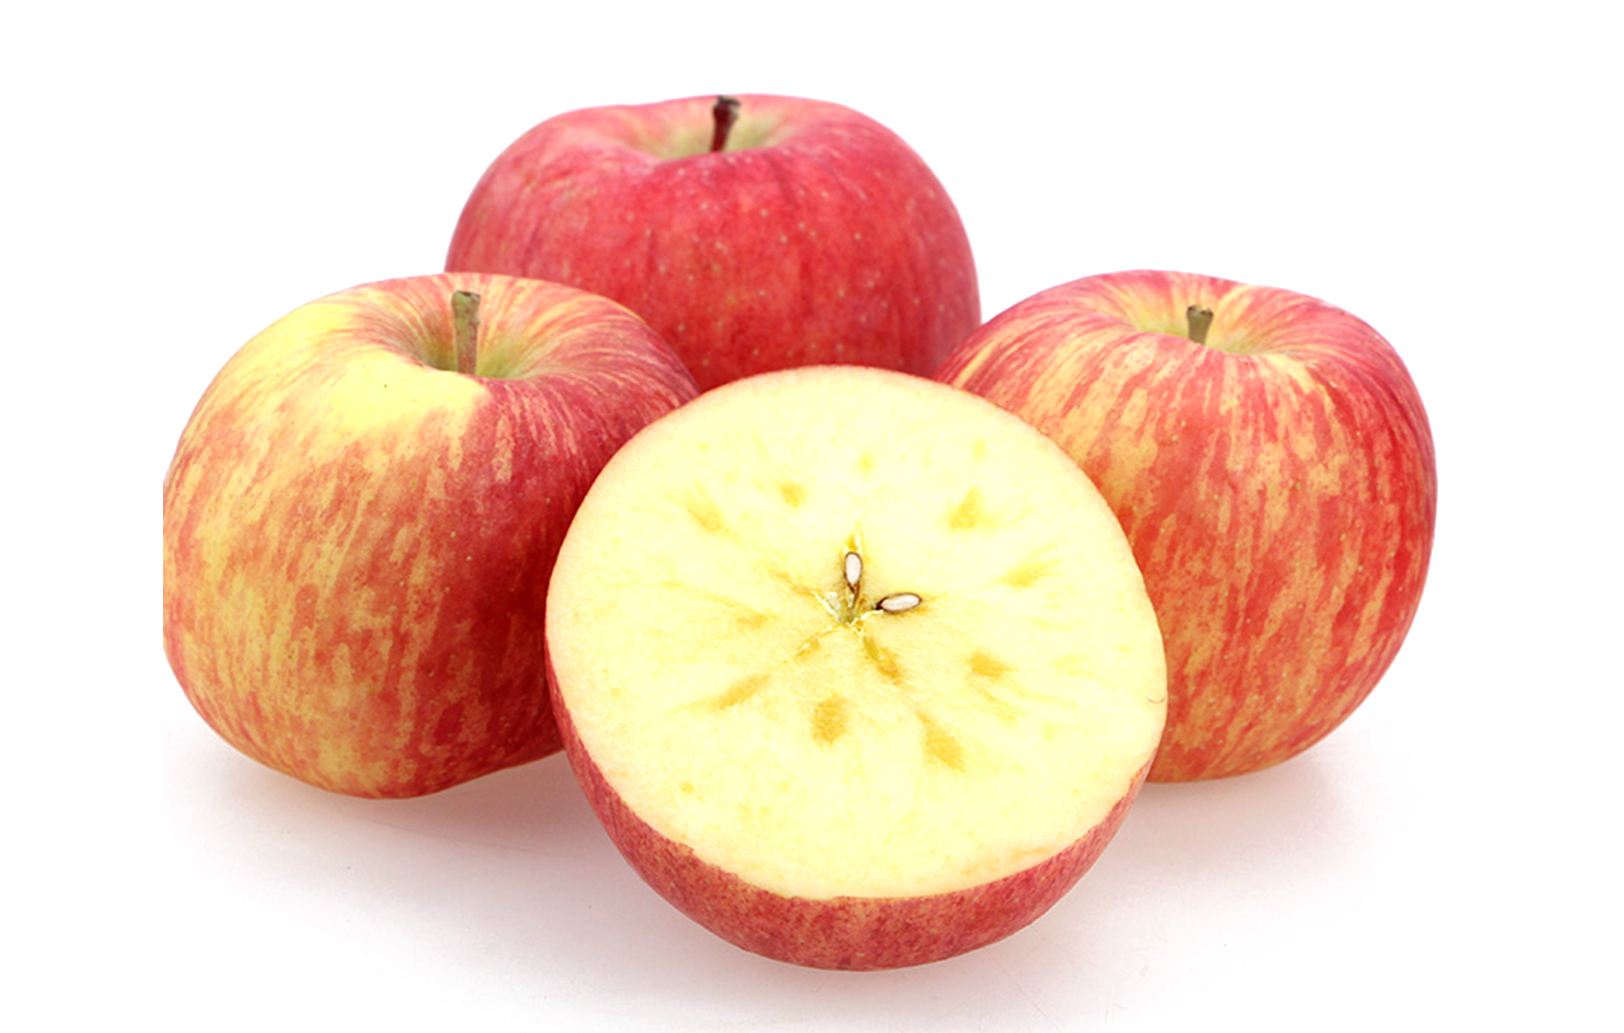 【阿克苏冰糖心苹果】被称为新疆的;水果皇后产地直销 - 阿里巴巴商友圈